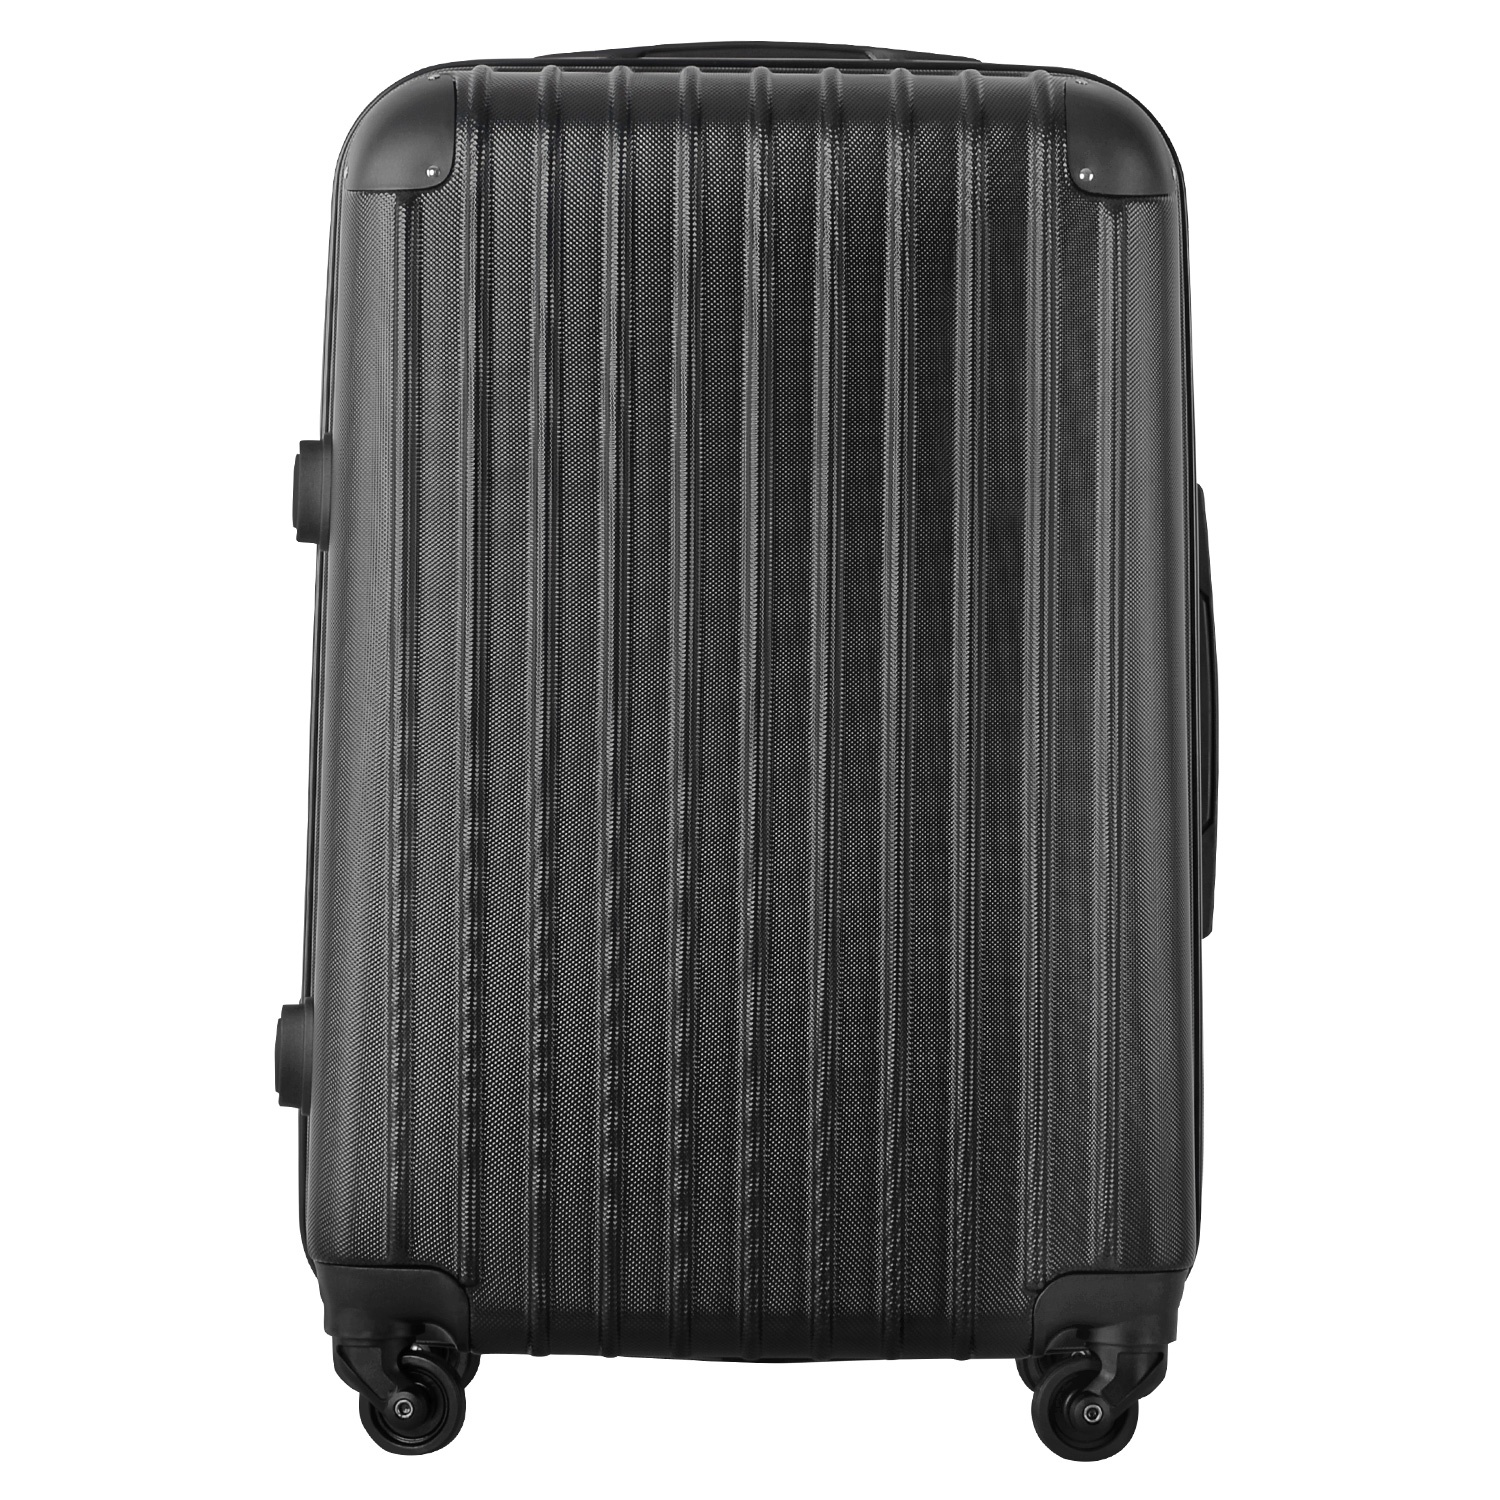 キャリーケース スーツケース Mサイズ 3泊4日 キャリーバッグ  超軽量 旅行カバン バック かわ...